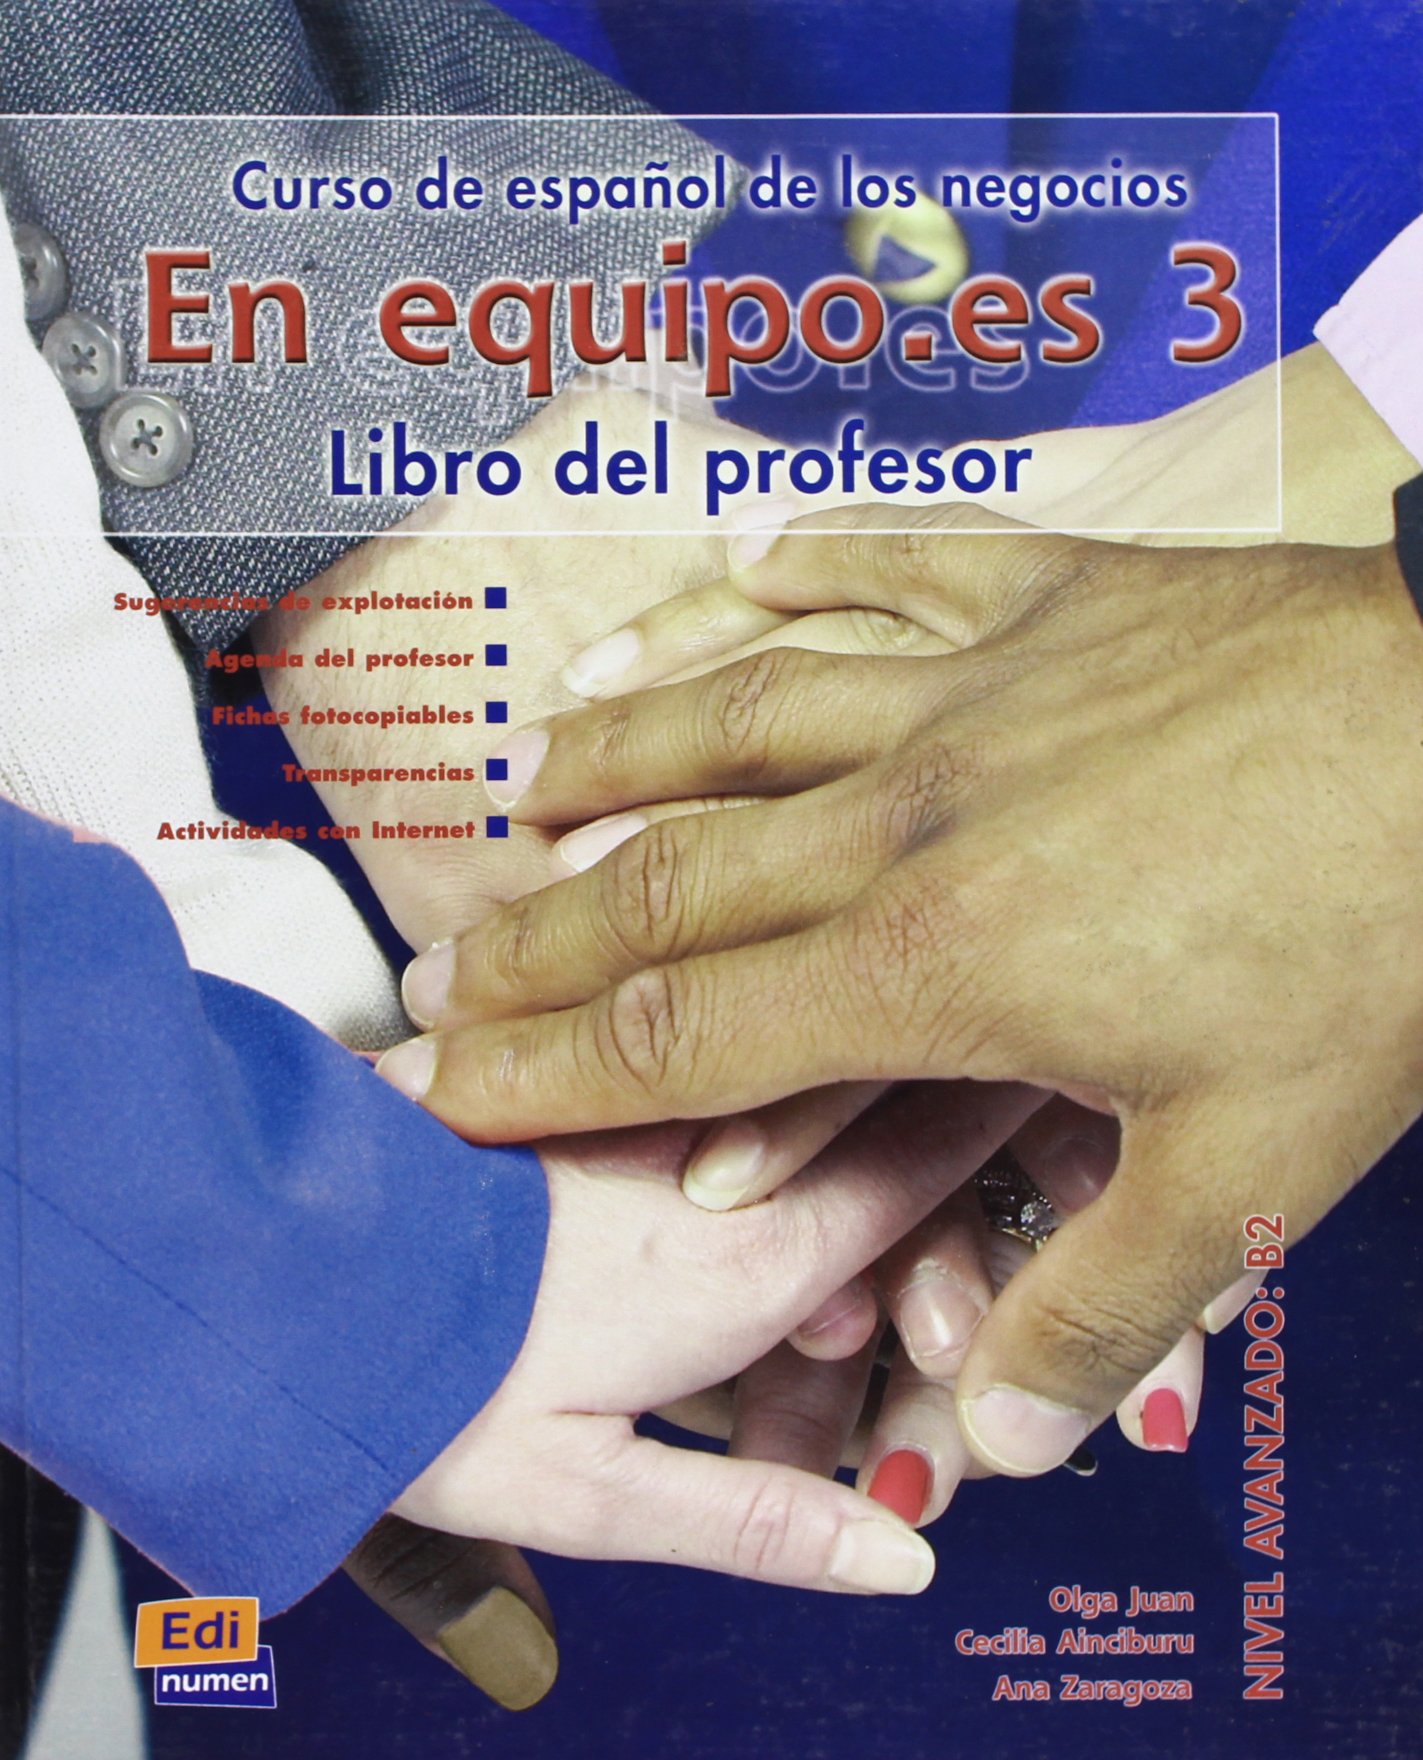 En equipo.es 3 Libro del Profesor / Книга для учителя